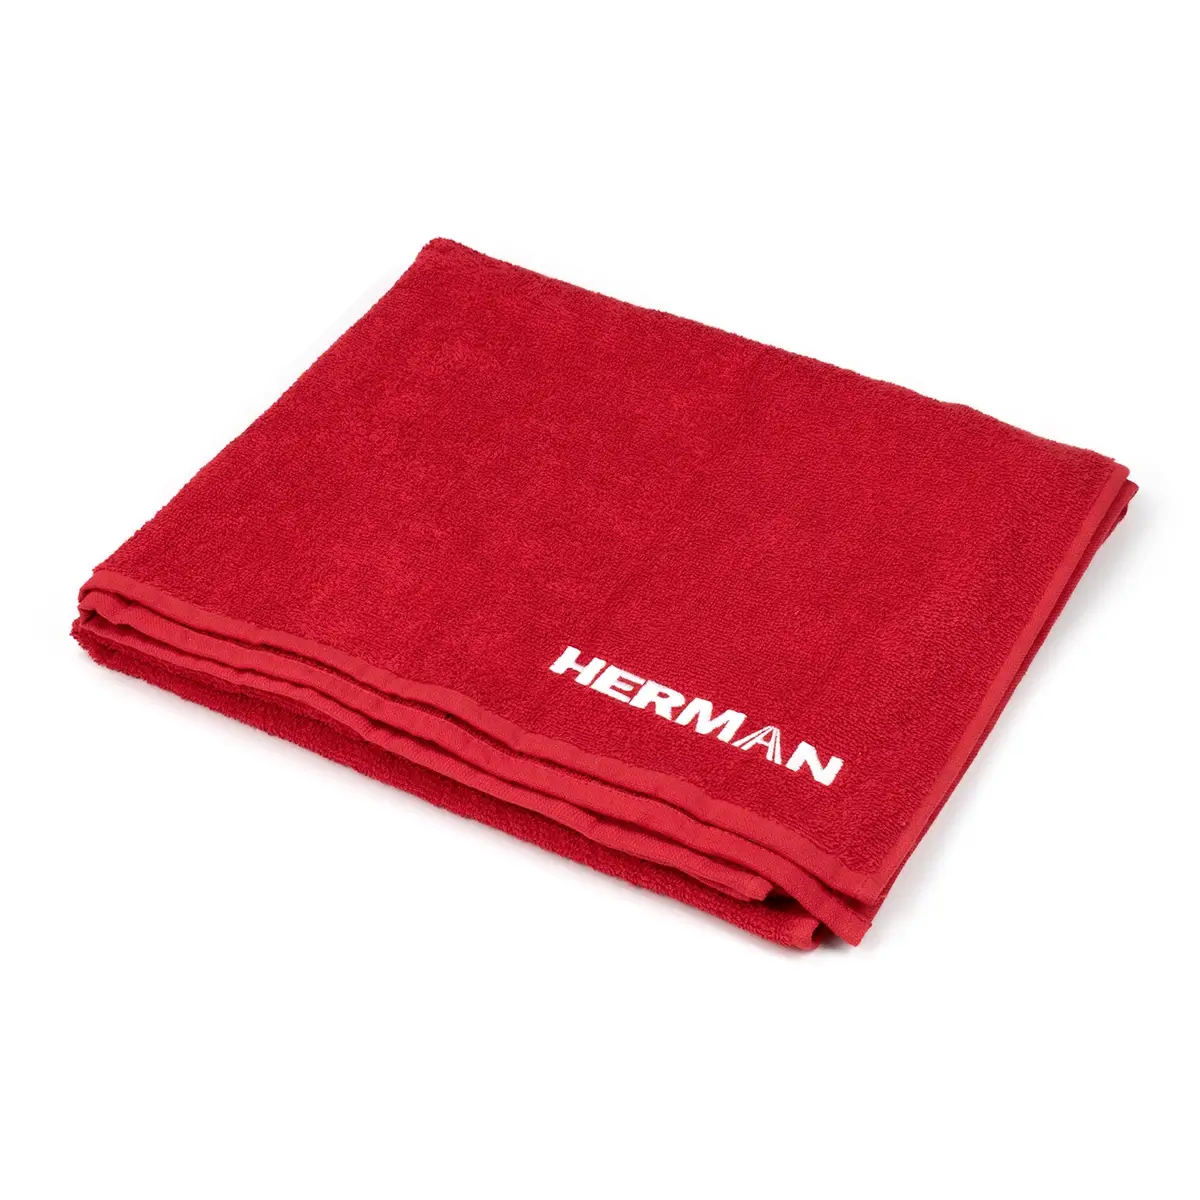 Red towel HERMAN 80010104